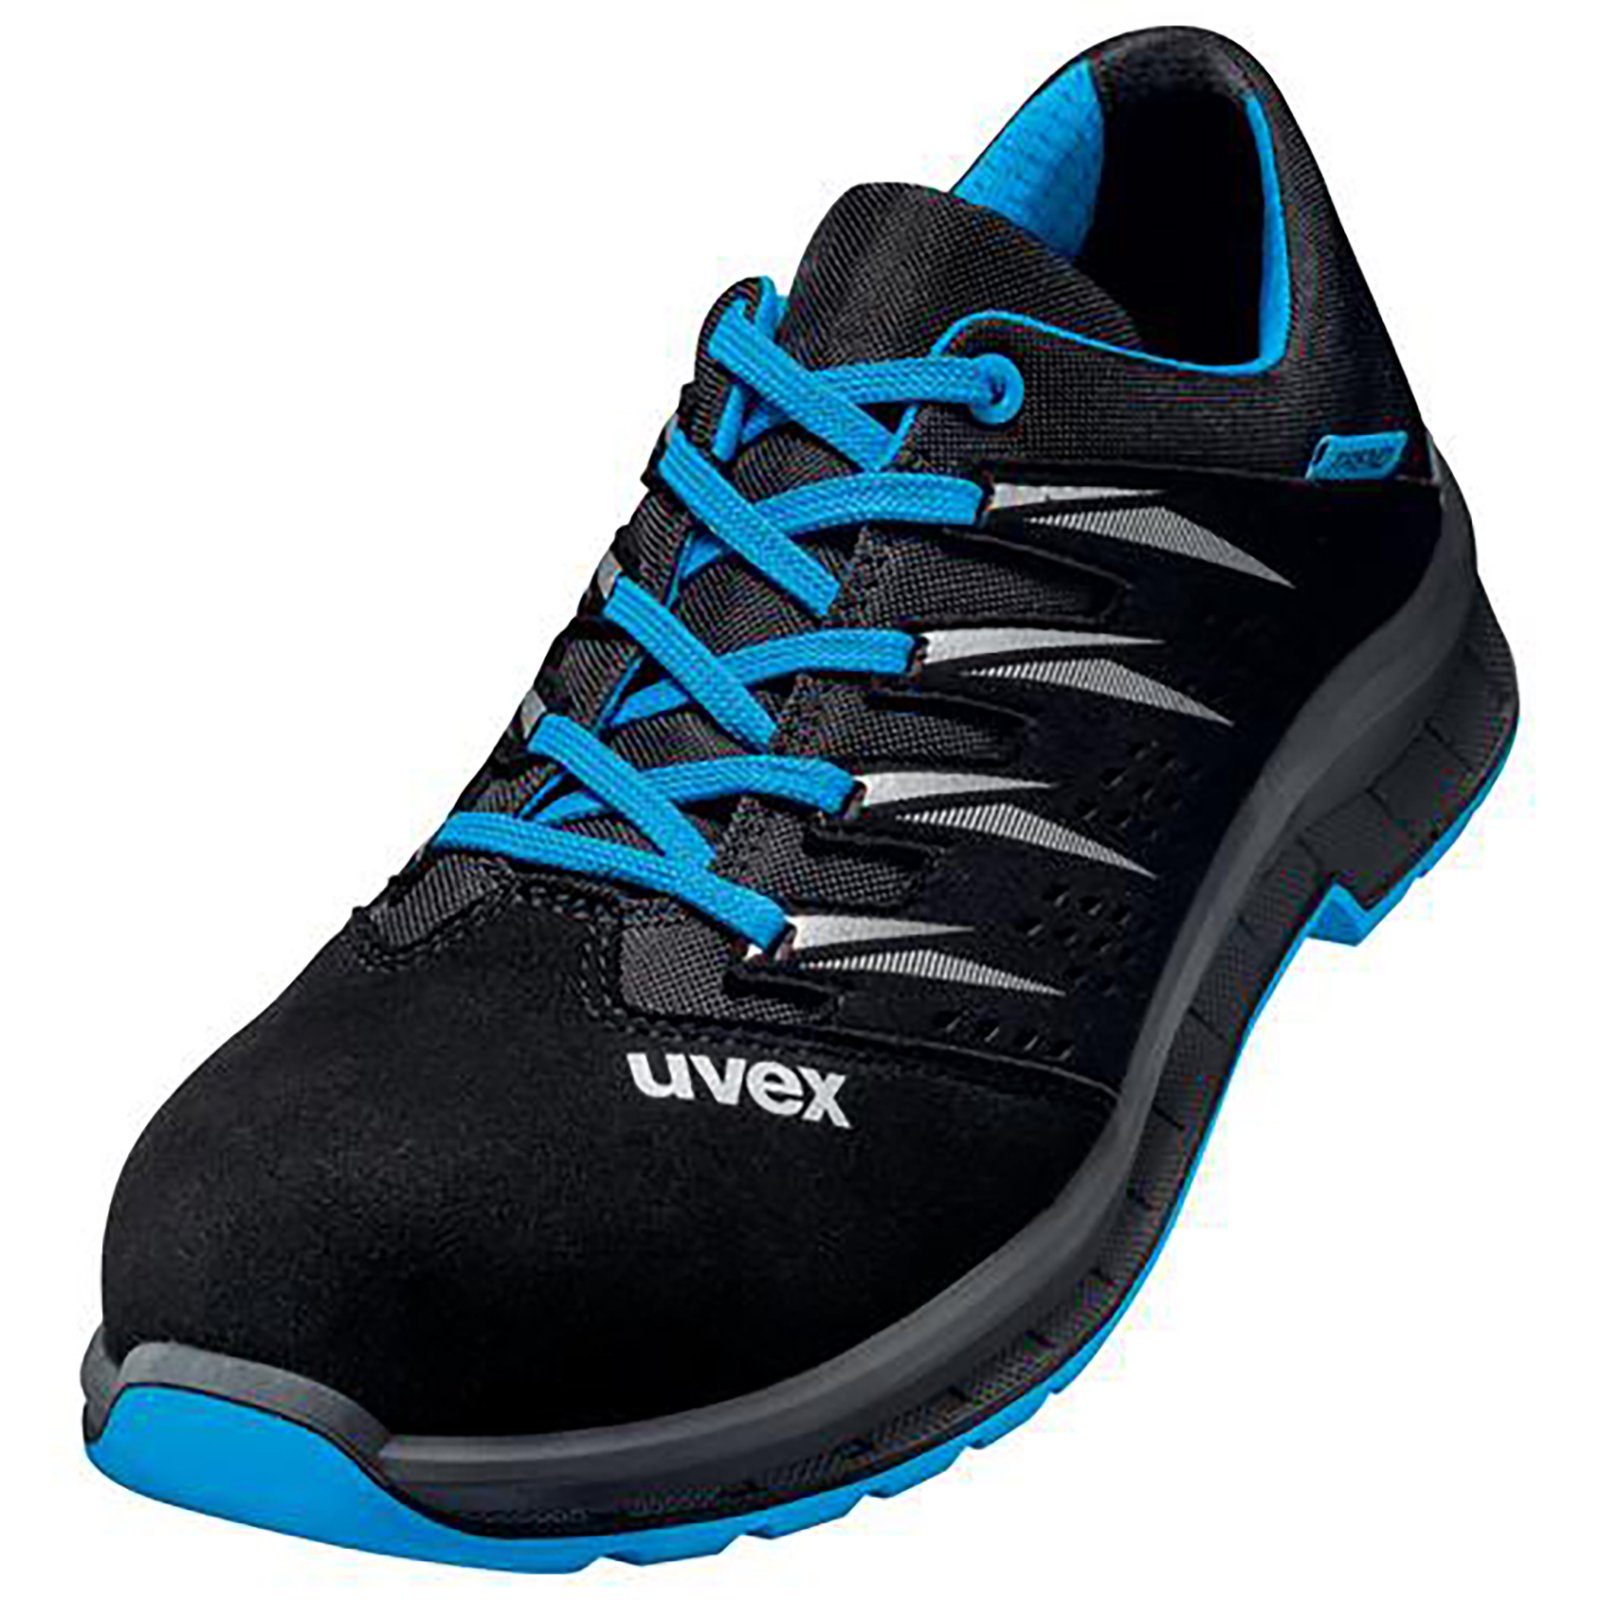 Uvex 2 trend schwarz 12 blau, Weite Sicherheitsschuh S1 Halbschuhe